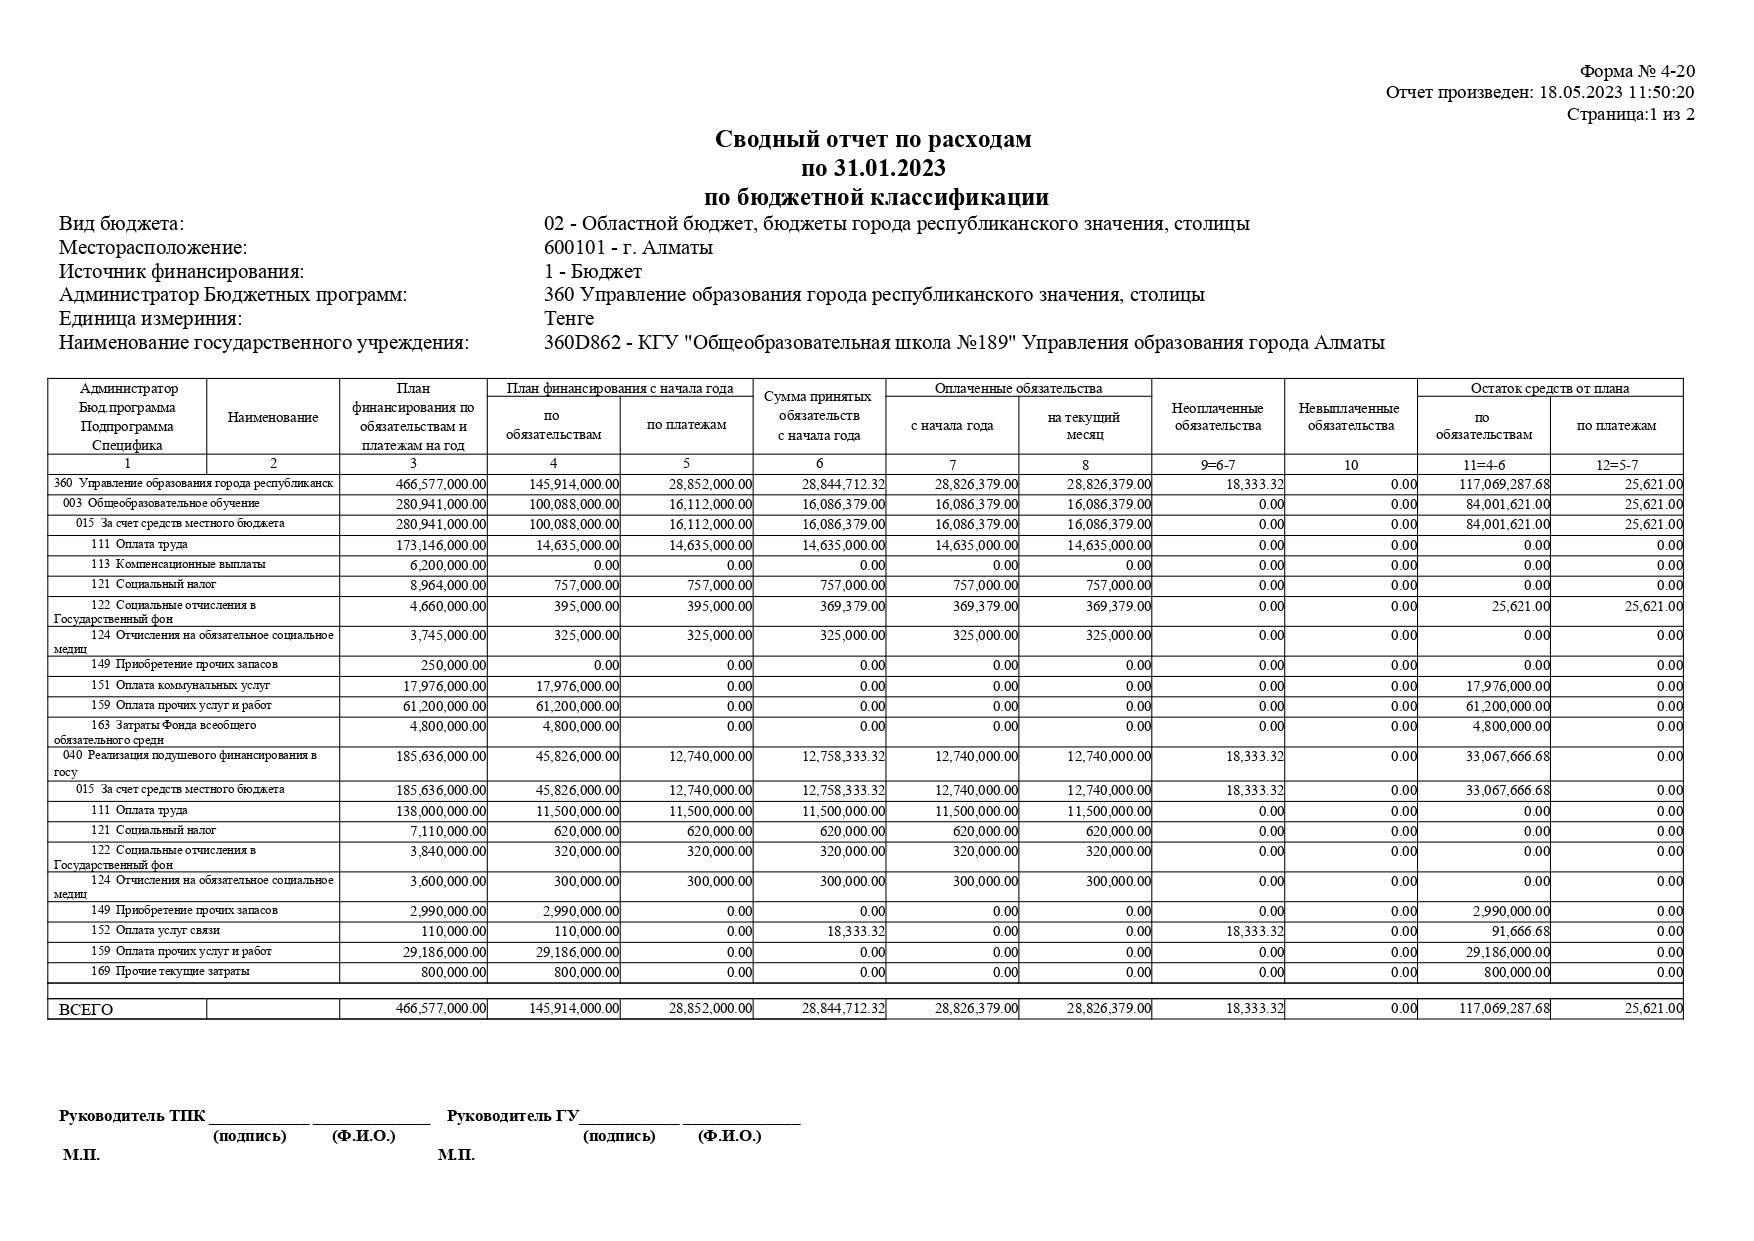 Сводный отчет по расходам по 31.01.2023